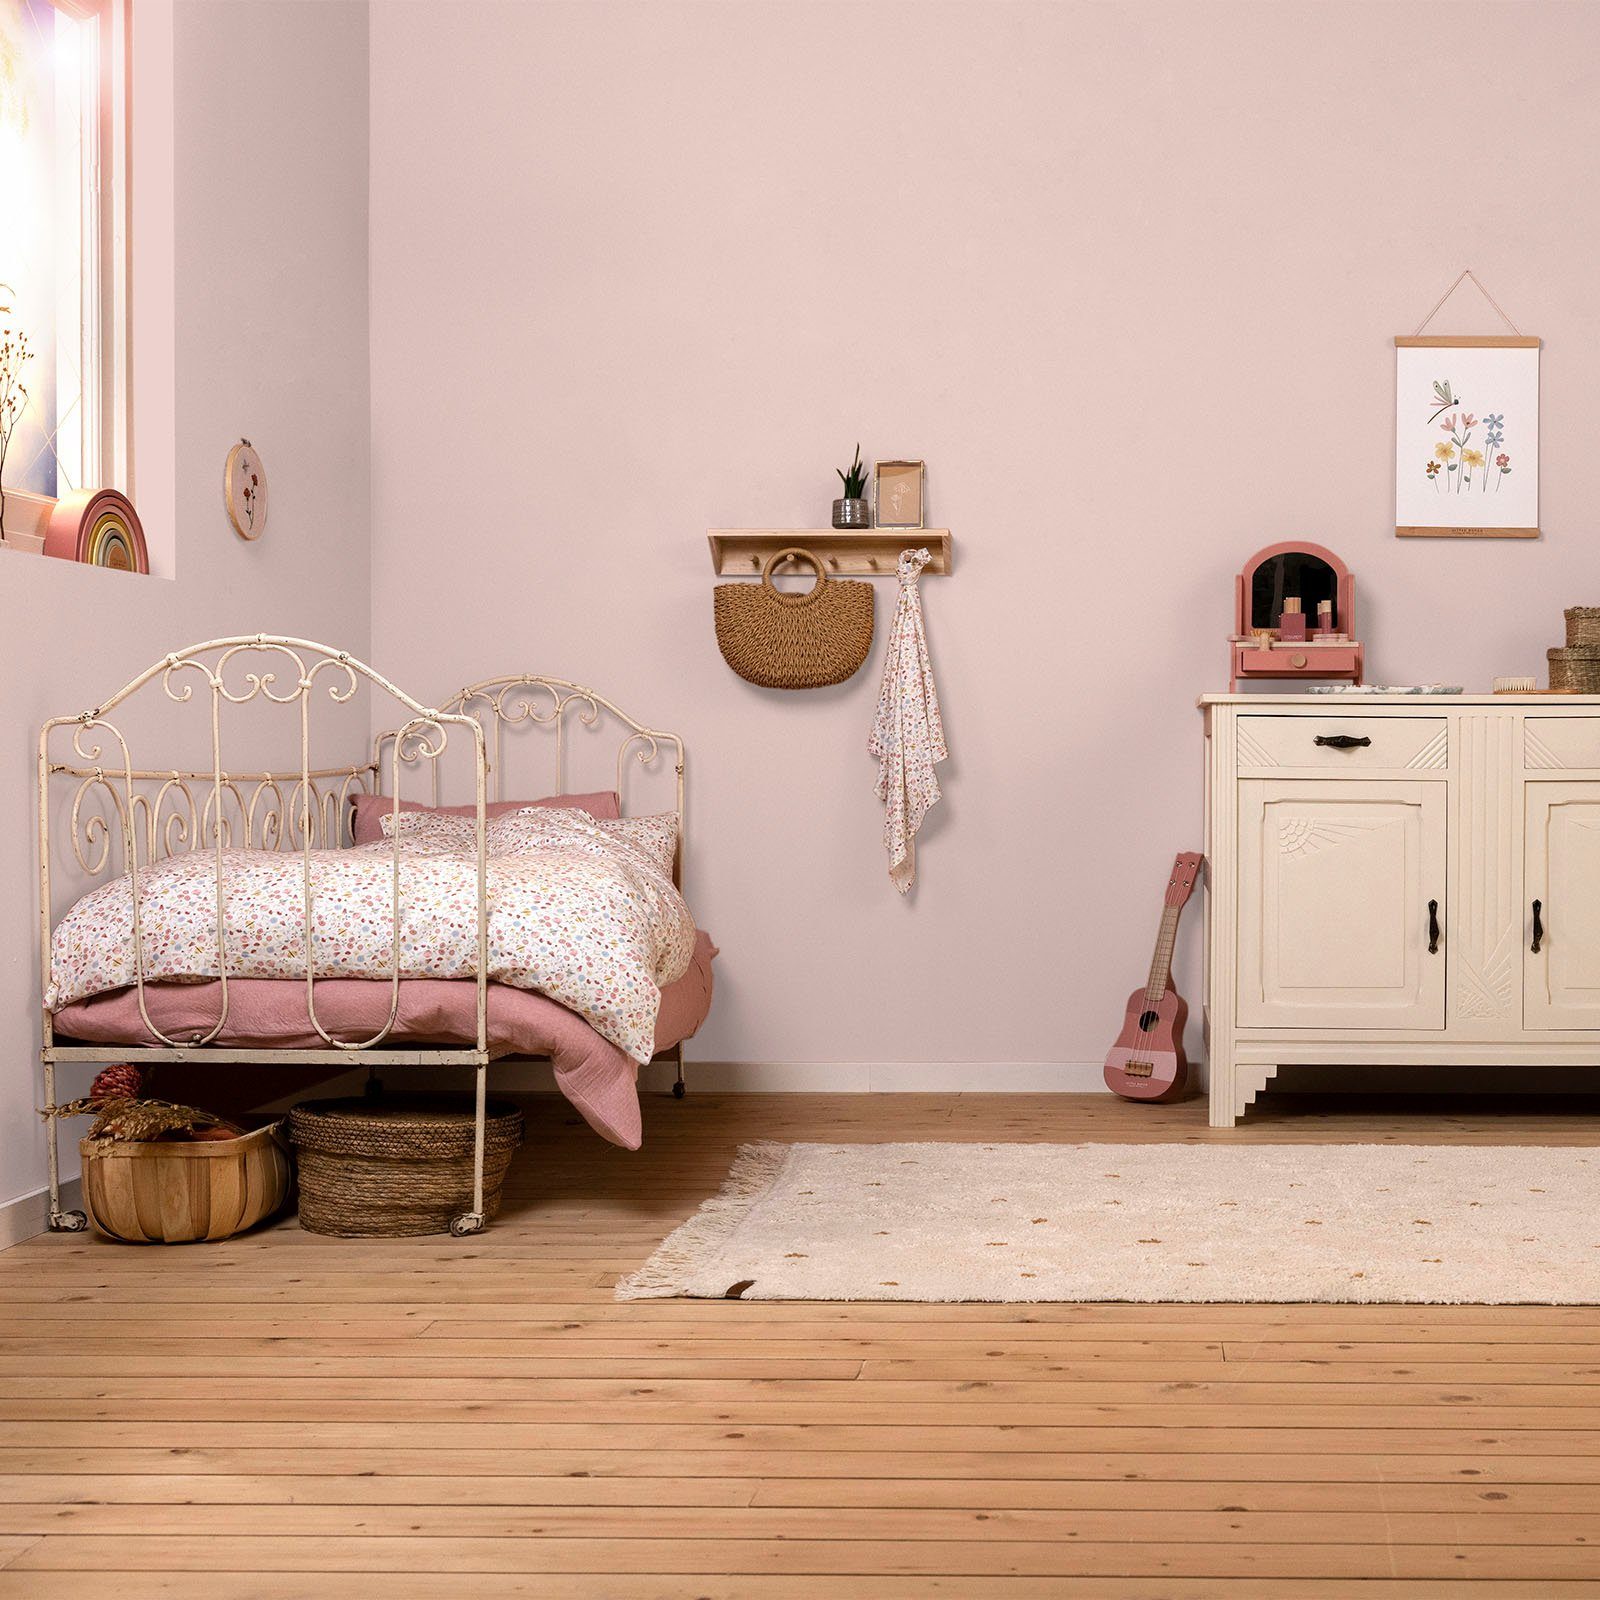 Wallpaint, DUTCH Wandfarbe LITTLE für Rosa waschbeständig, Kinderzimmer geeignet und hochdeckend extra Adventure matt,